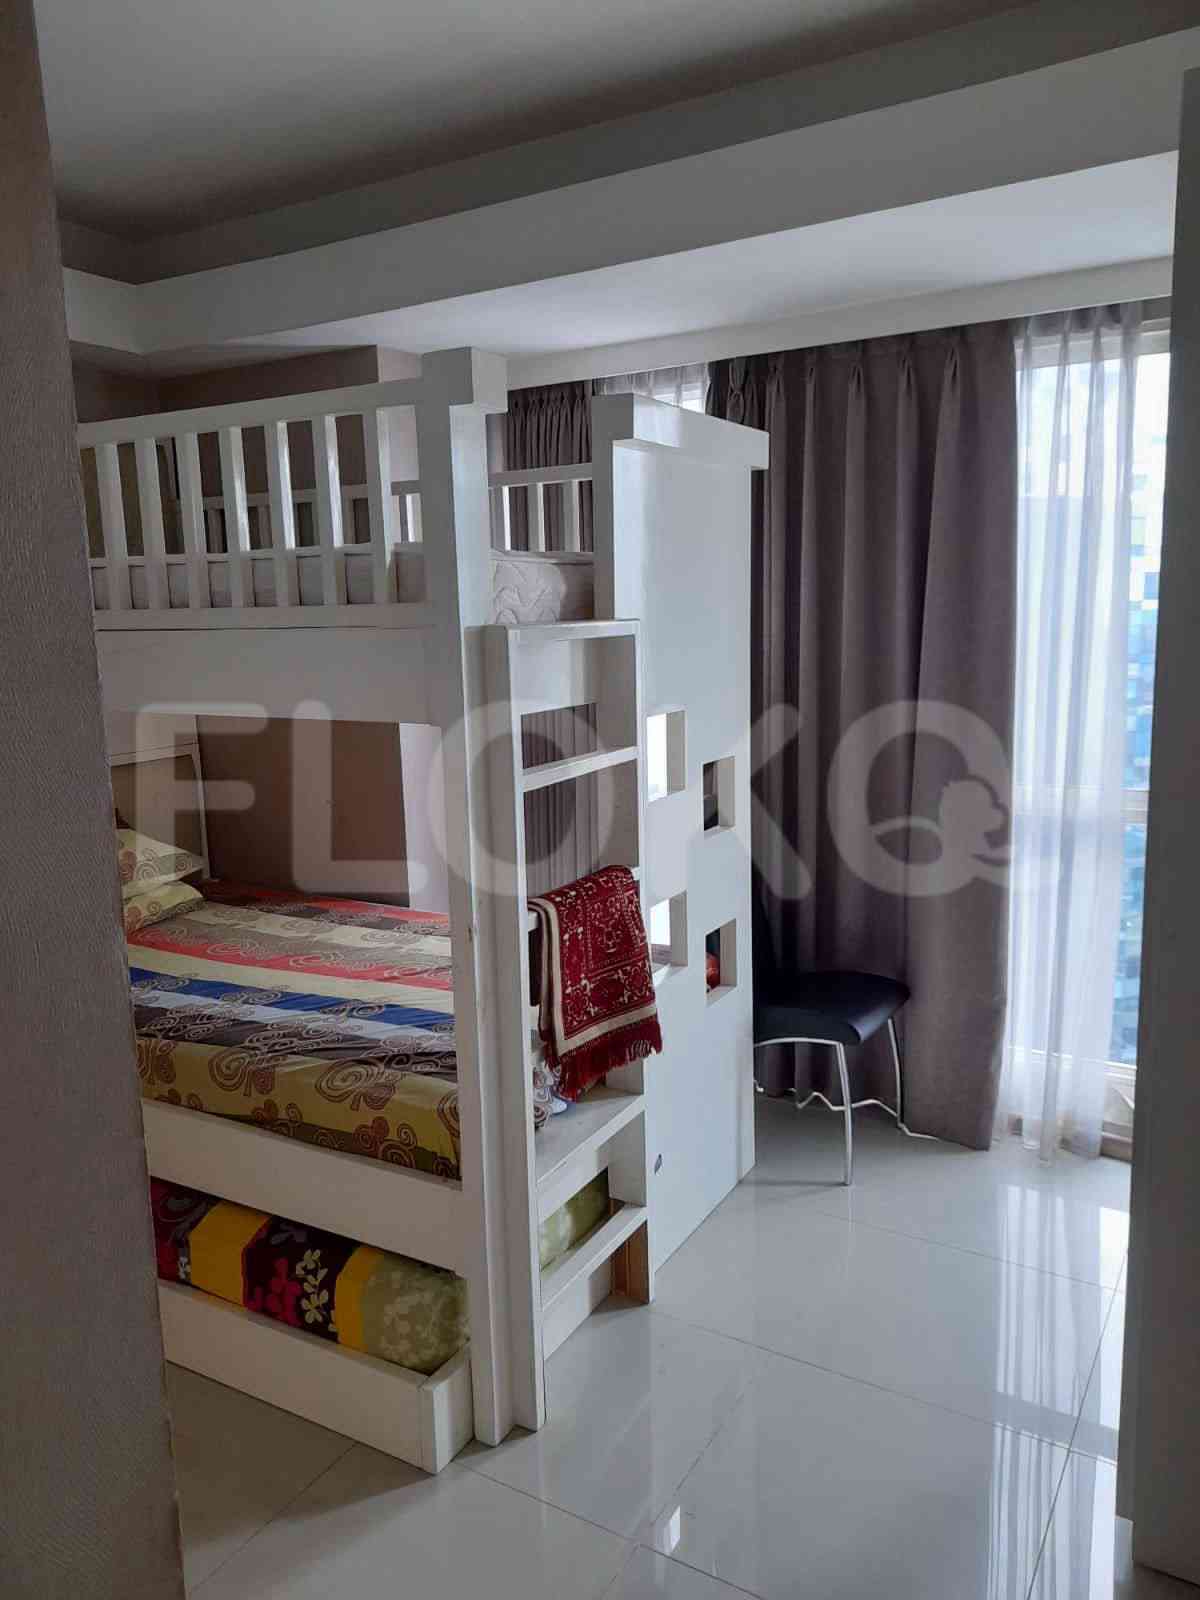 4 Bedroom on 10th Floor for Rent in Casa Grande - ftef92 5